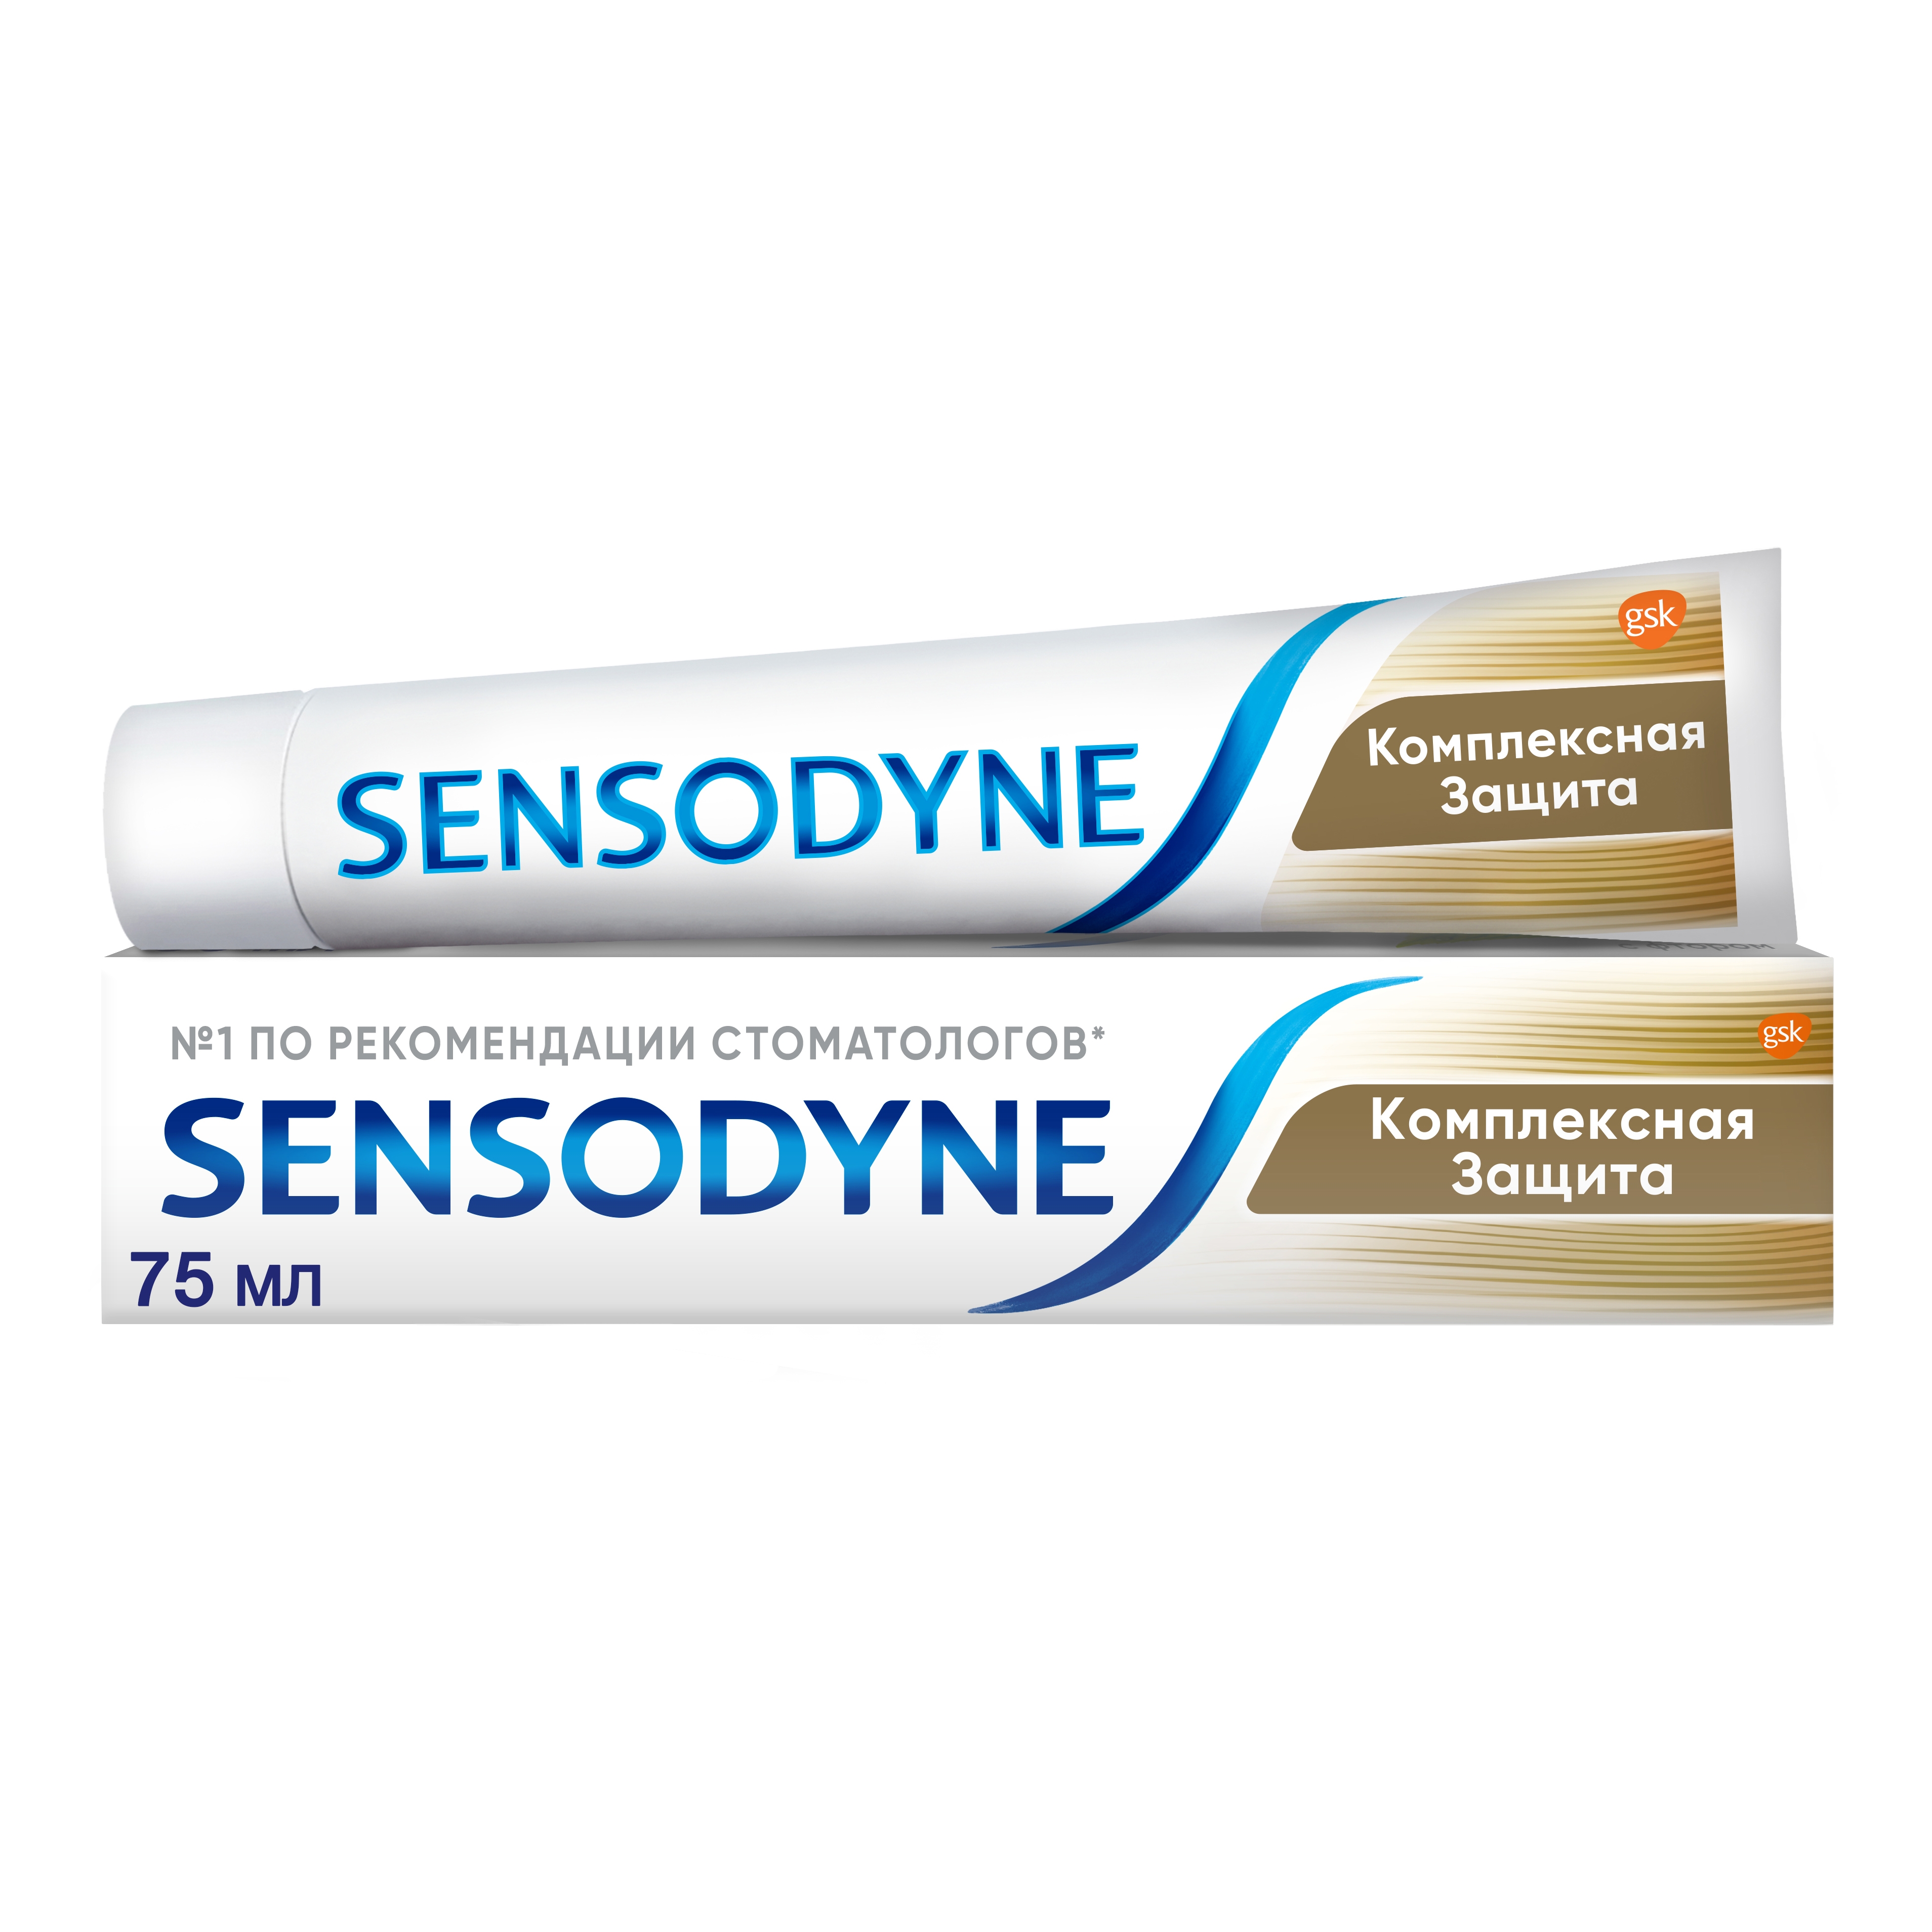 Зубная паста Sensodyne Комплексная Защита, для чувствительных зубов, 75 мл зубная паста sensodyne мгновенный эффект длительная защита 75 мл